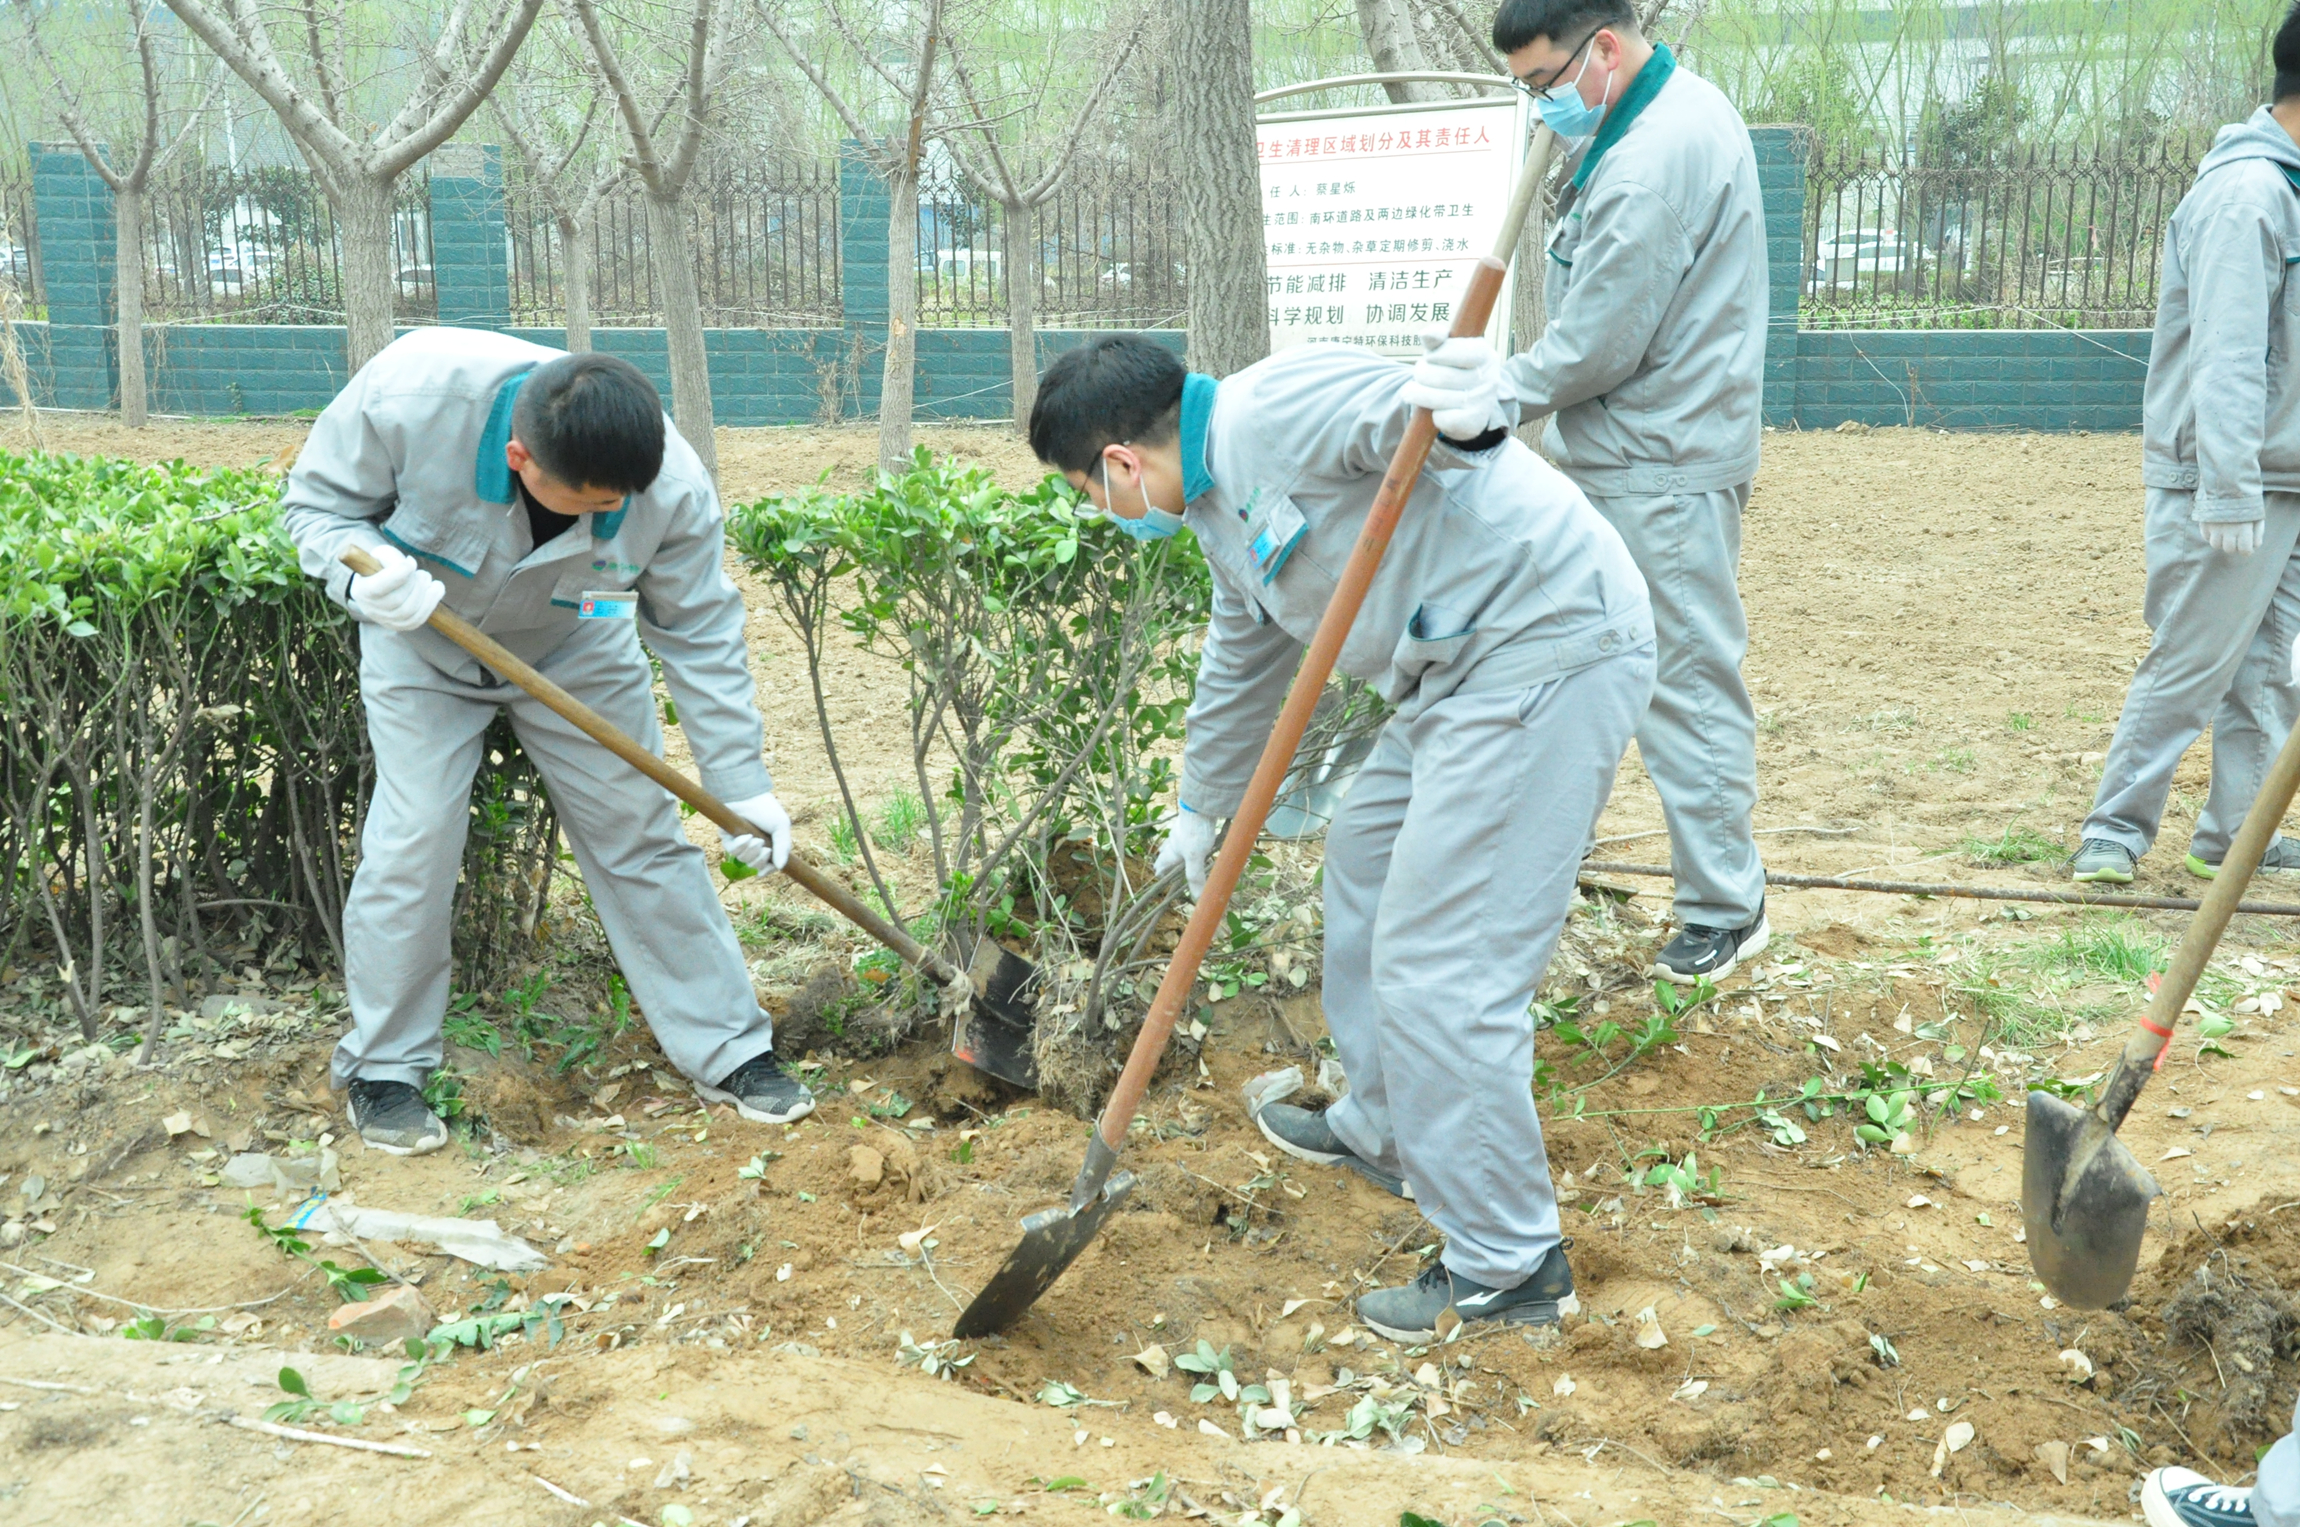 康宁特环保集团组织开展“奉献绿色、生态发展”植树节活动